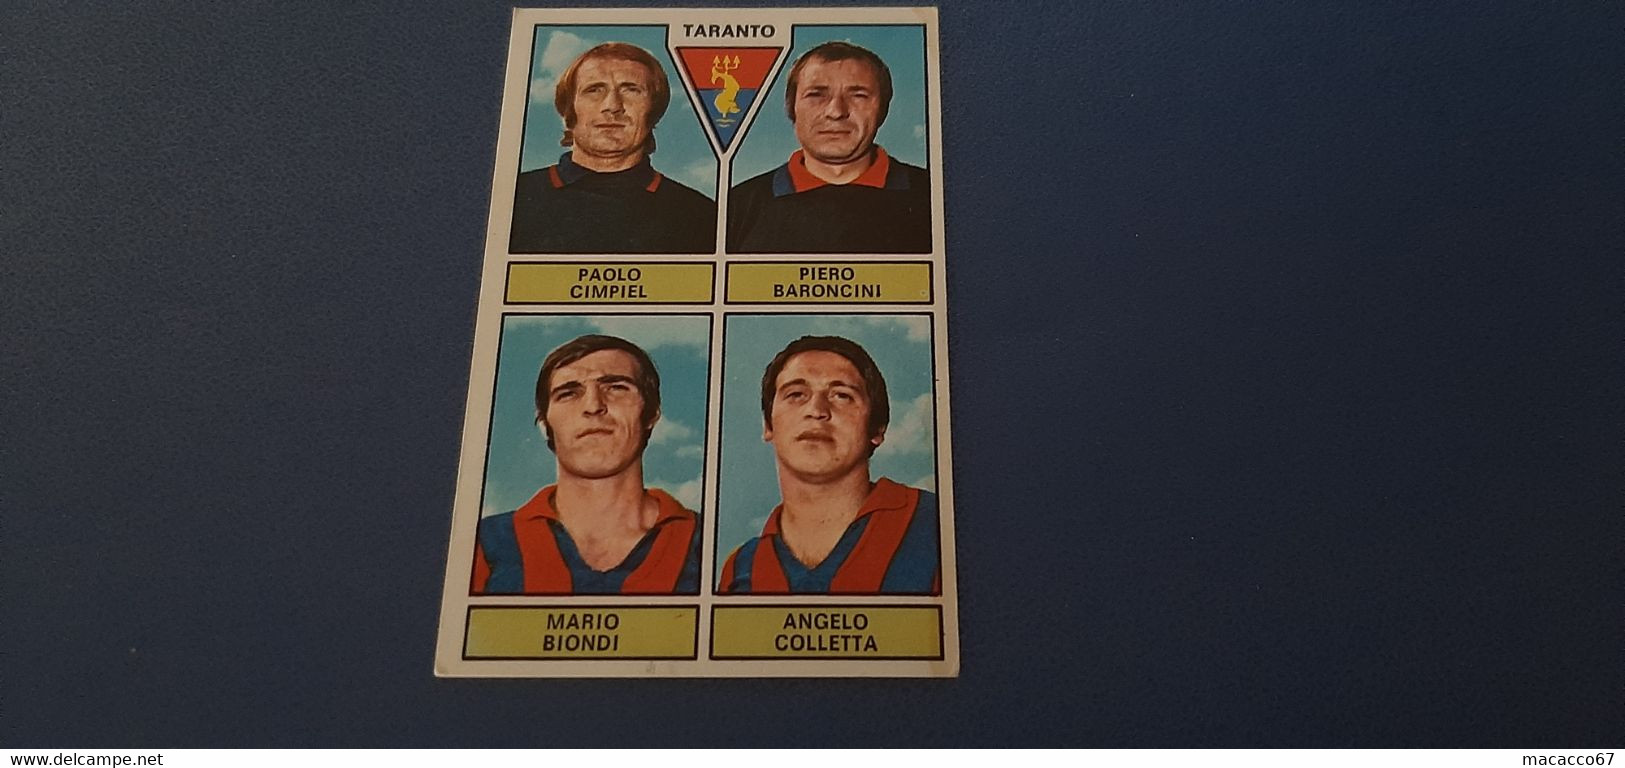 Figurina Calciatori Panini 1971/72 - Cimpiel Taranto - Edizione Italiana